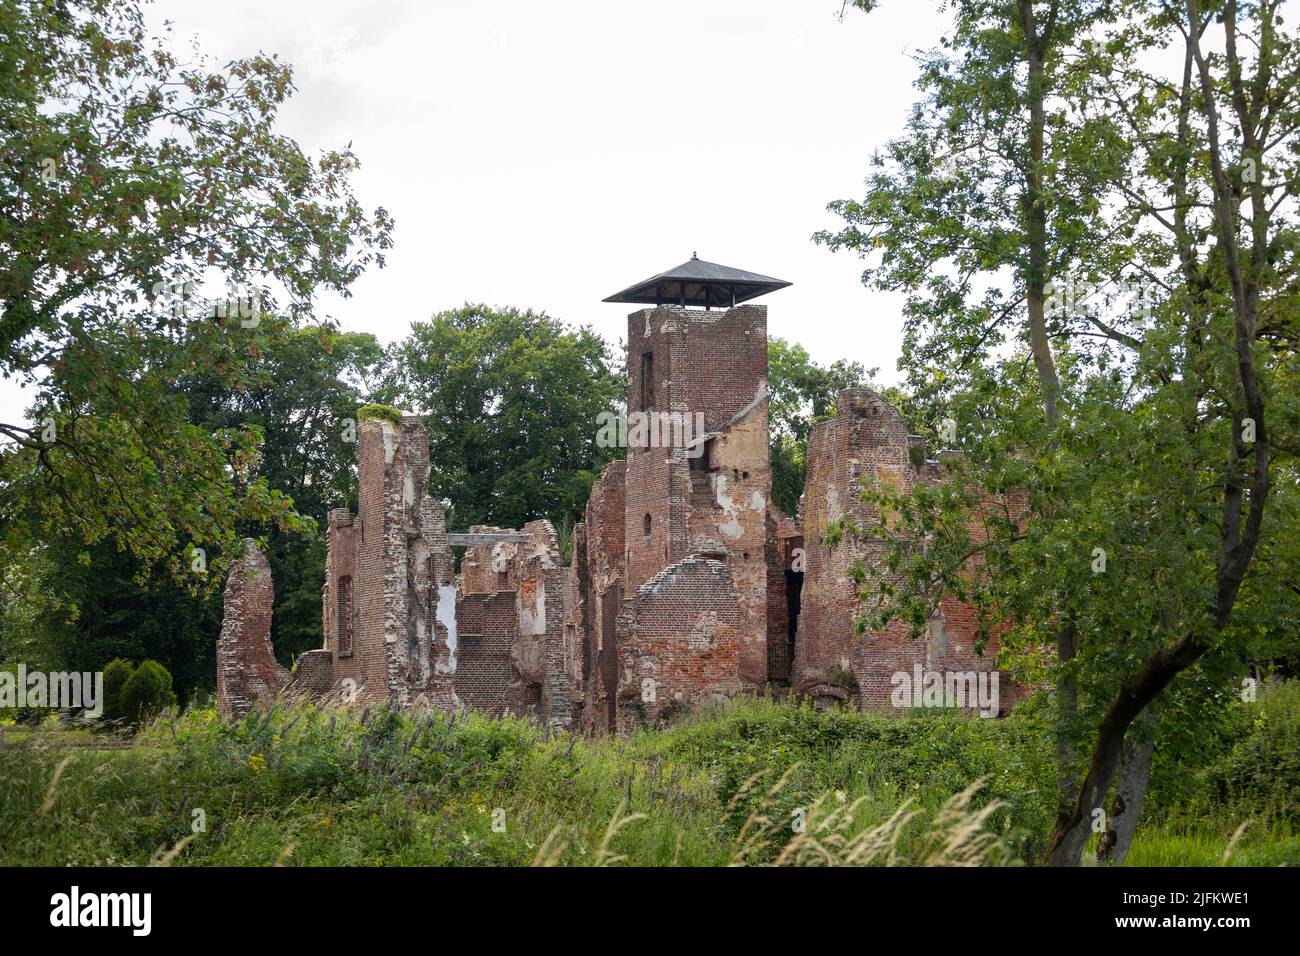 Castillo medieval en ruinas 'Bleijenbeek' en los Países Bajos, bombardeado por la RAF durante WW2 Foto de stock